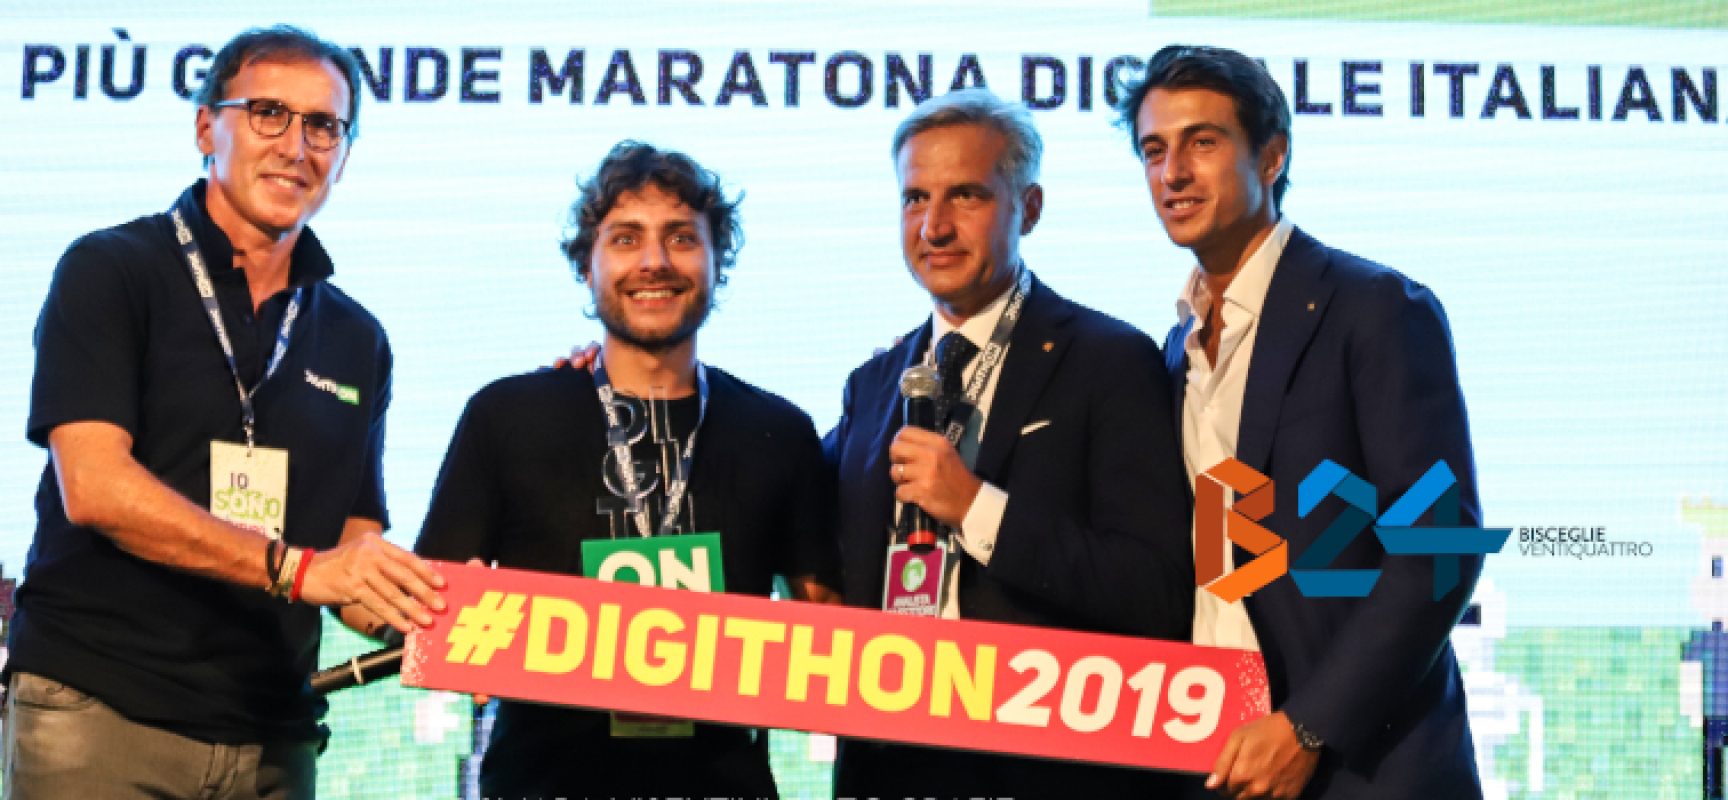 Maratona DigithON, il fotoracconto della quarta edizione